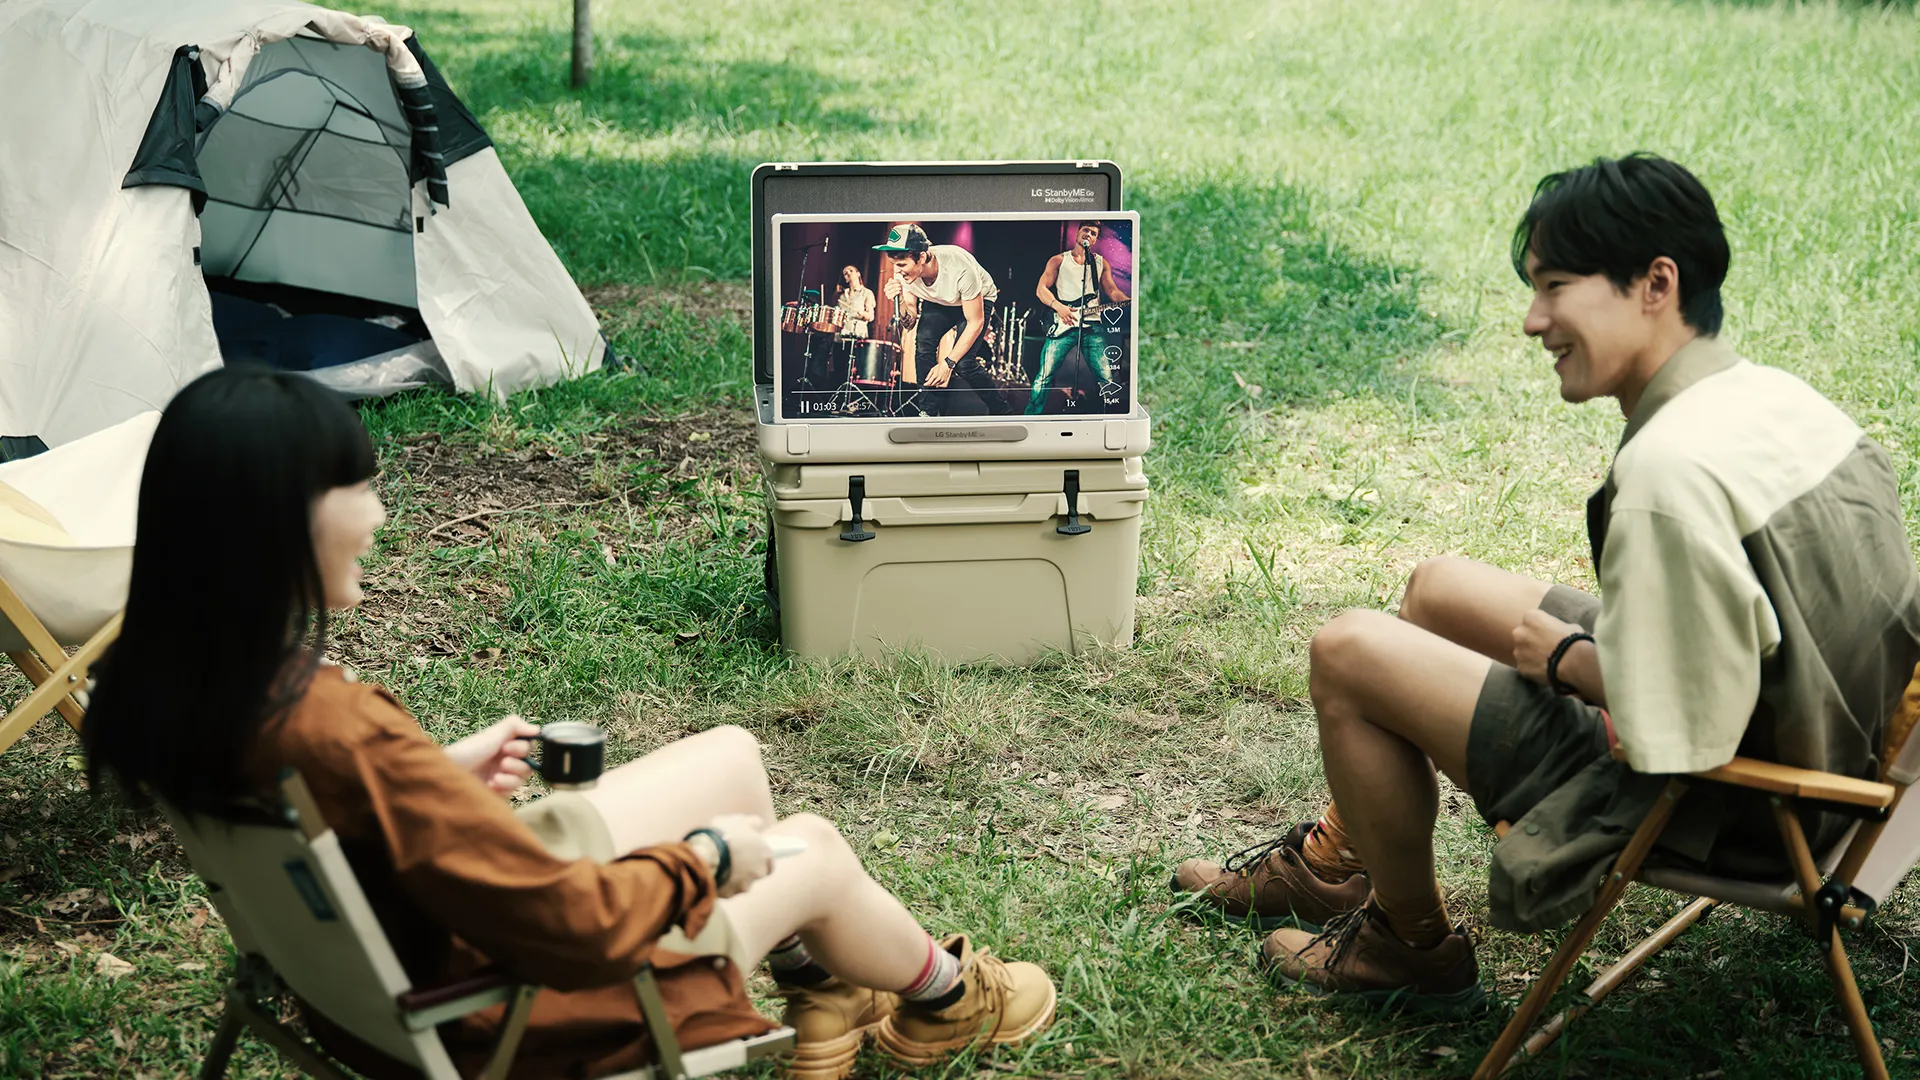 LG StanbyME Go ra mắt: Thiết bị giải trí xách tay, mở ra kỷ nguyên “picnic công nghệ”